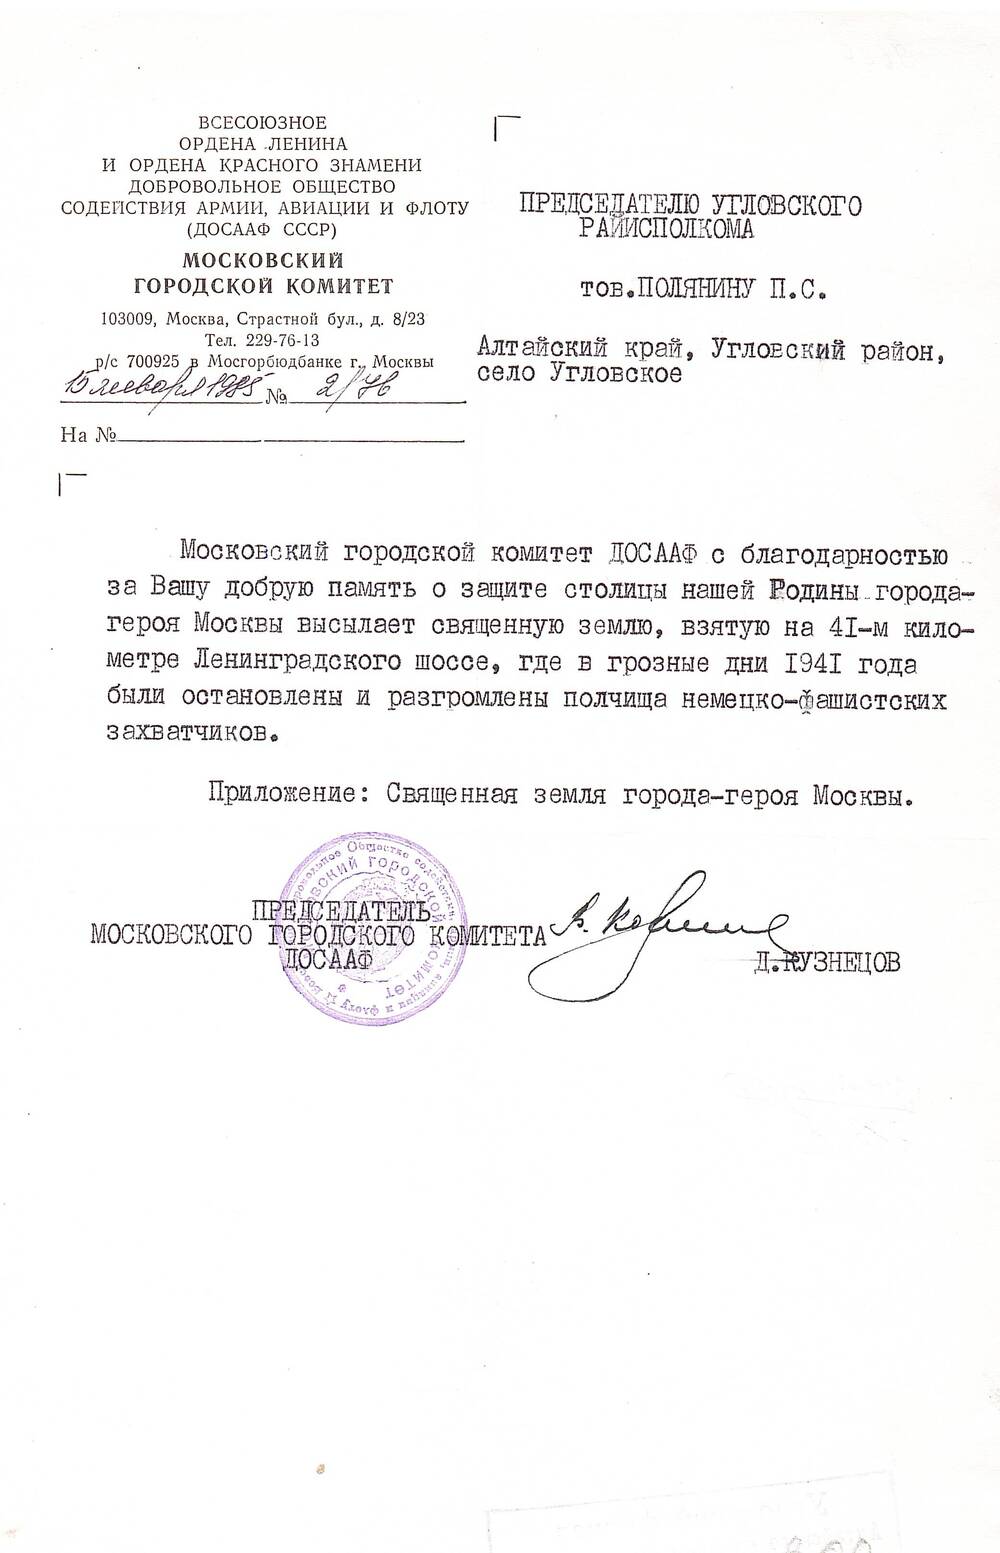 Письмо-благодарность от Московского городского комитета ДОСААФ